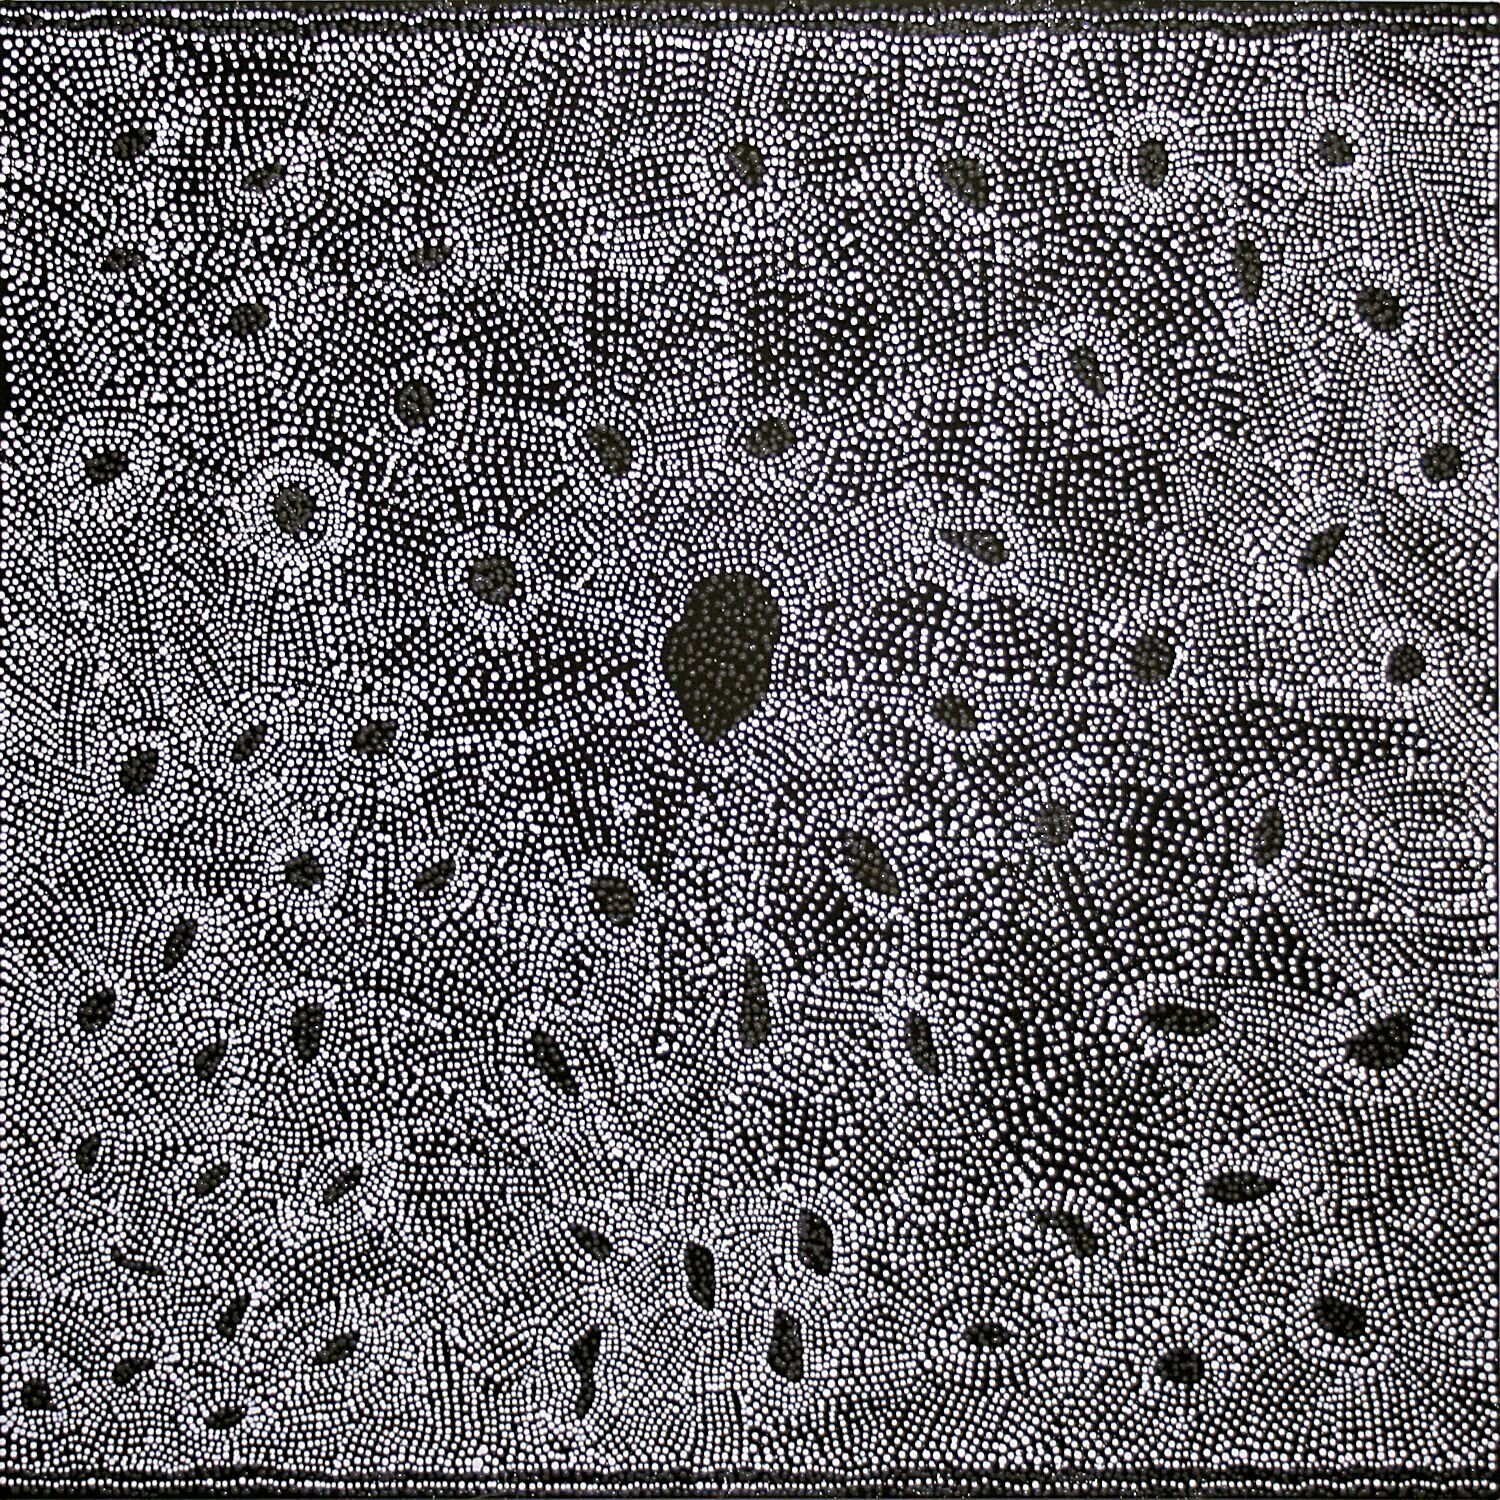 Pirlinyanu - Rockhole Dreaming, 2009 by Julie Nangala Robertson
122x122cm Cat 13379JR